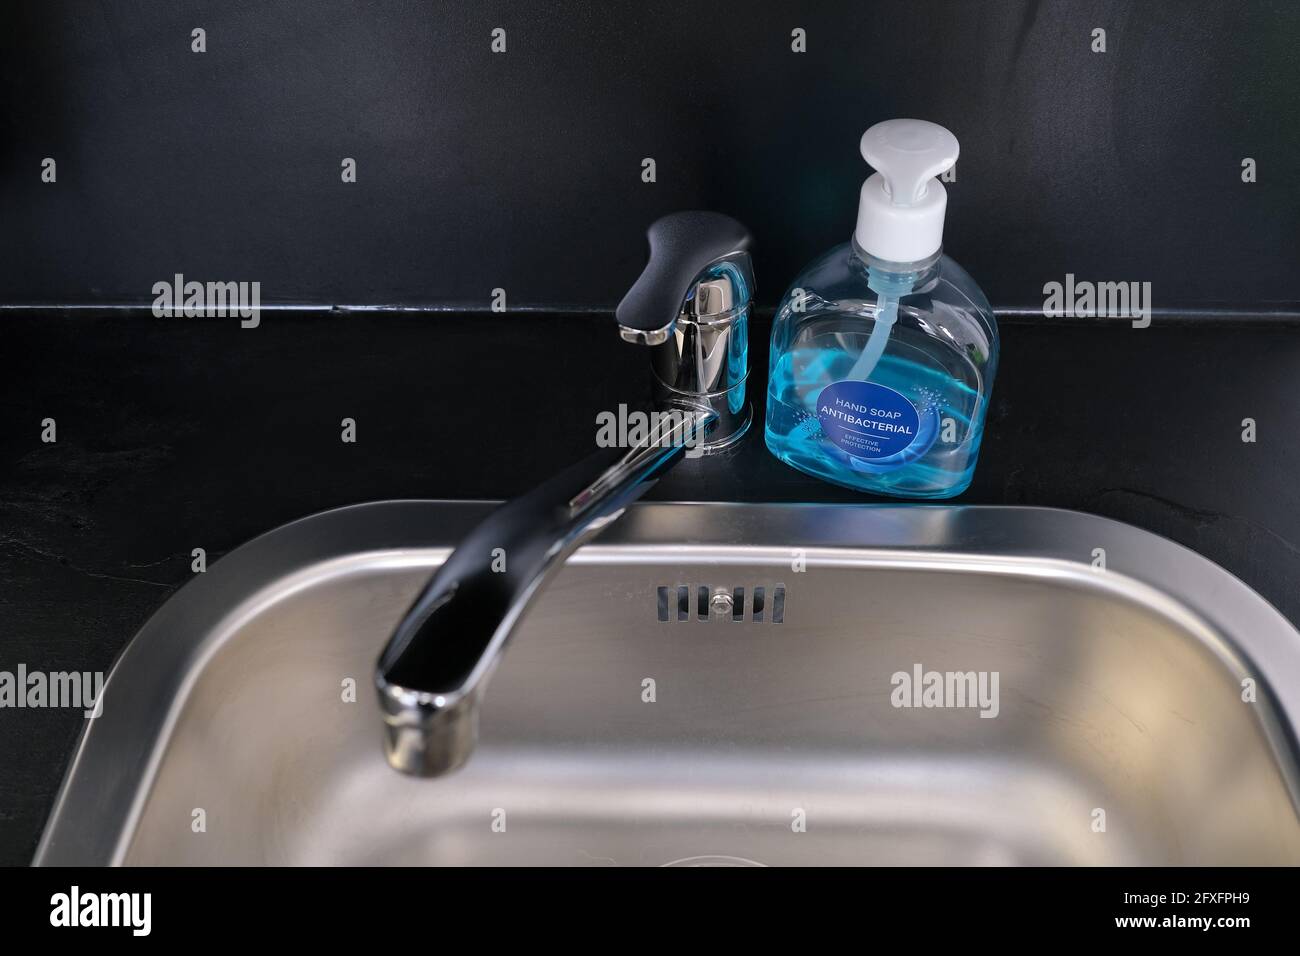 savon antibactérien pour les mains pour le lavage et la désinfection des virus et bactéries prêtes à l'emploi pendant une pandémie virale Banque D'Images